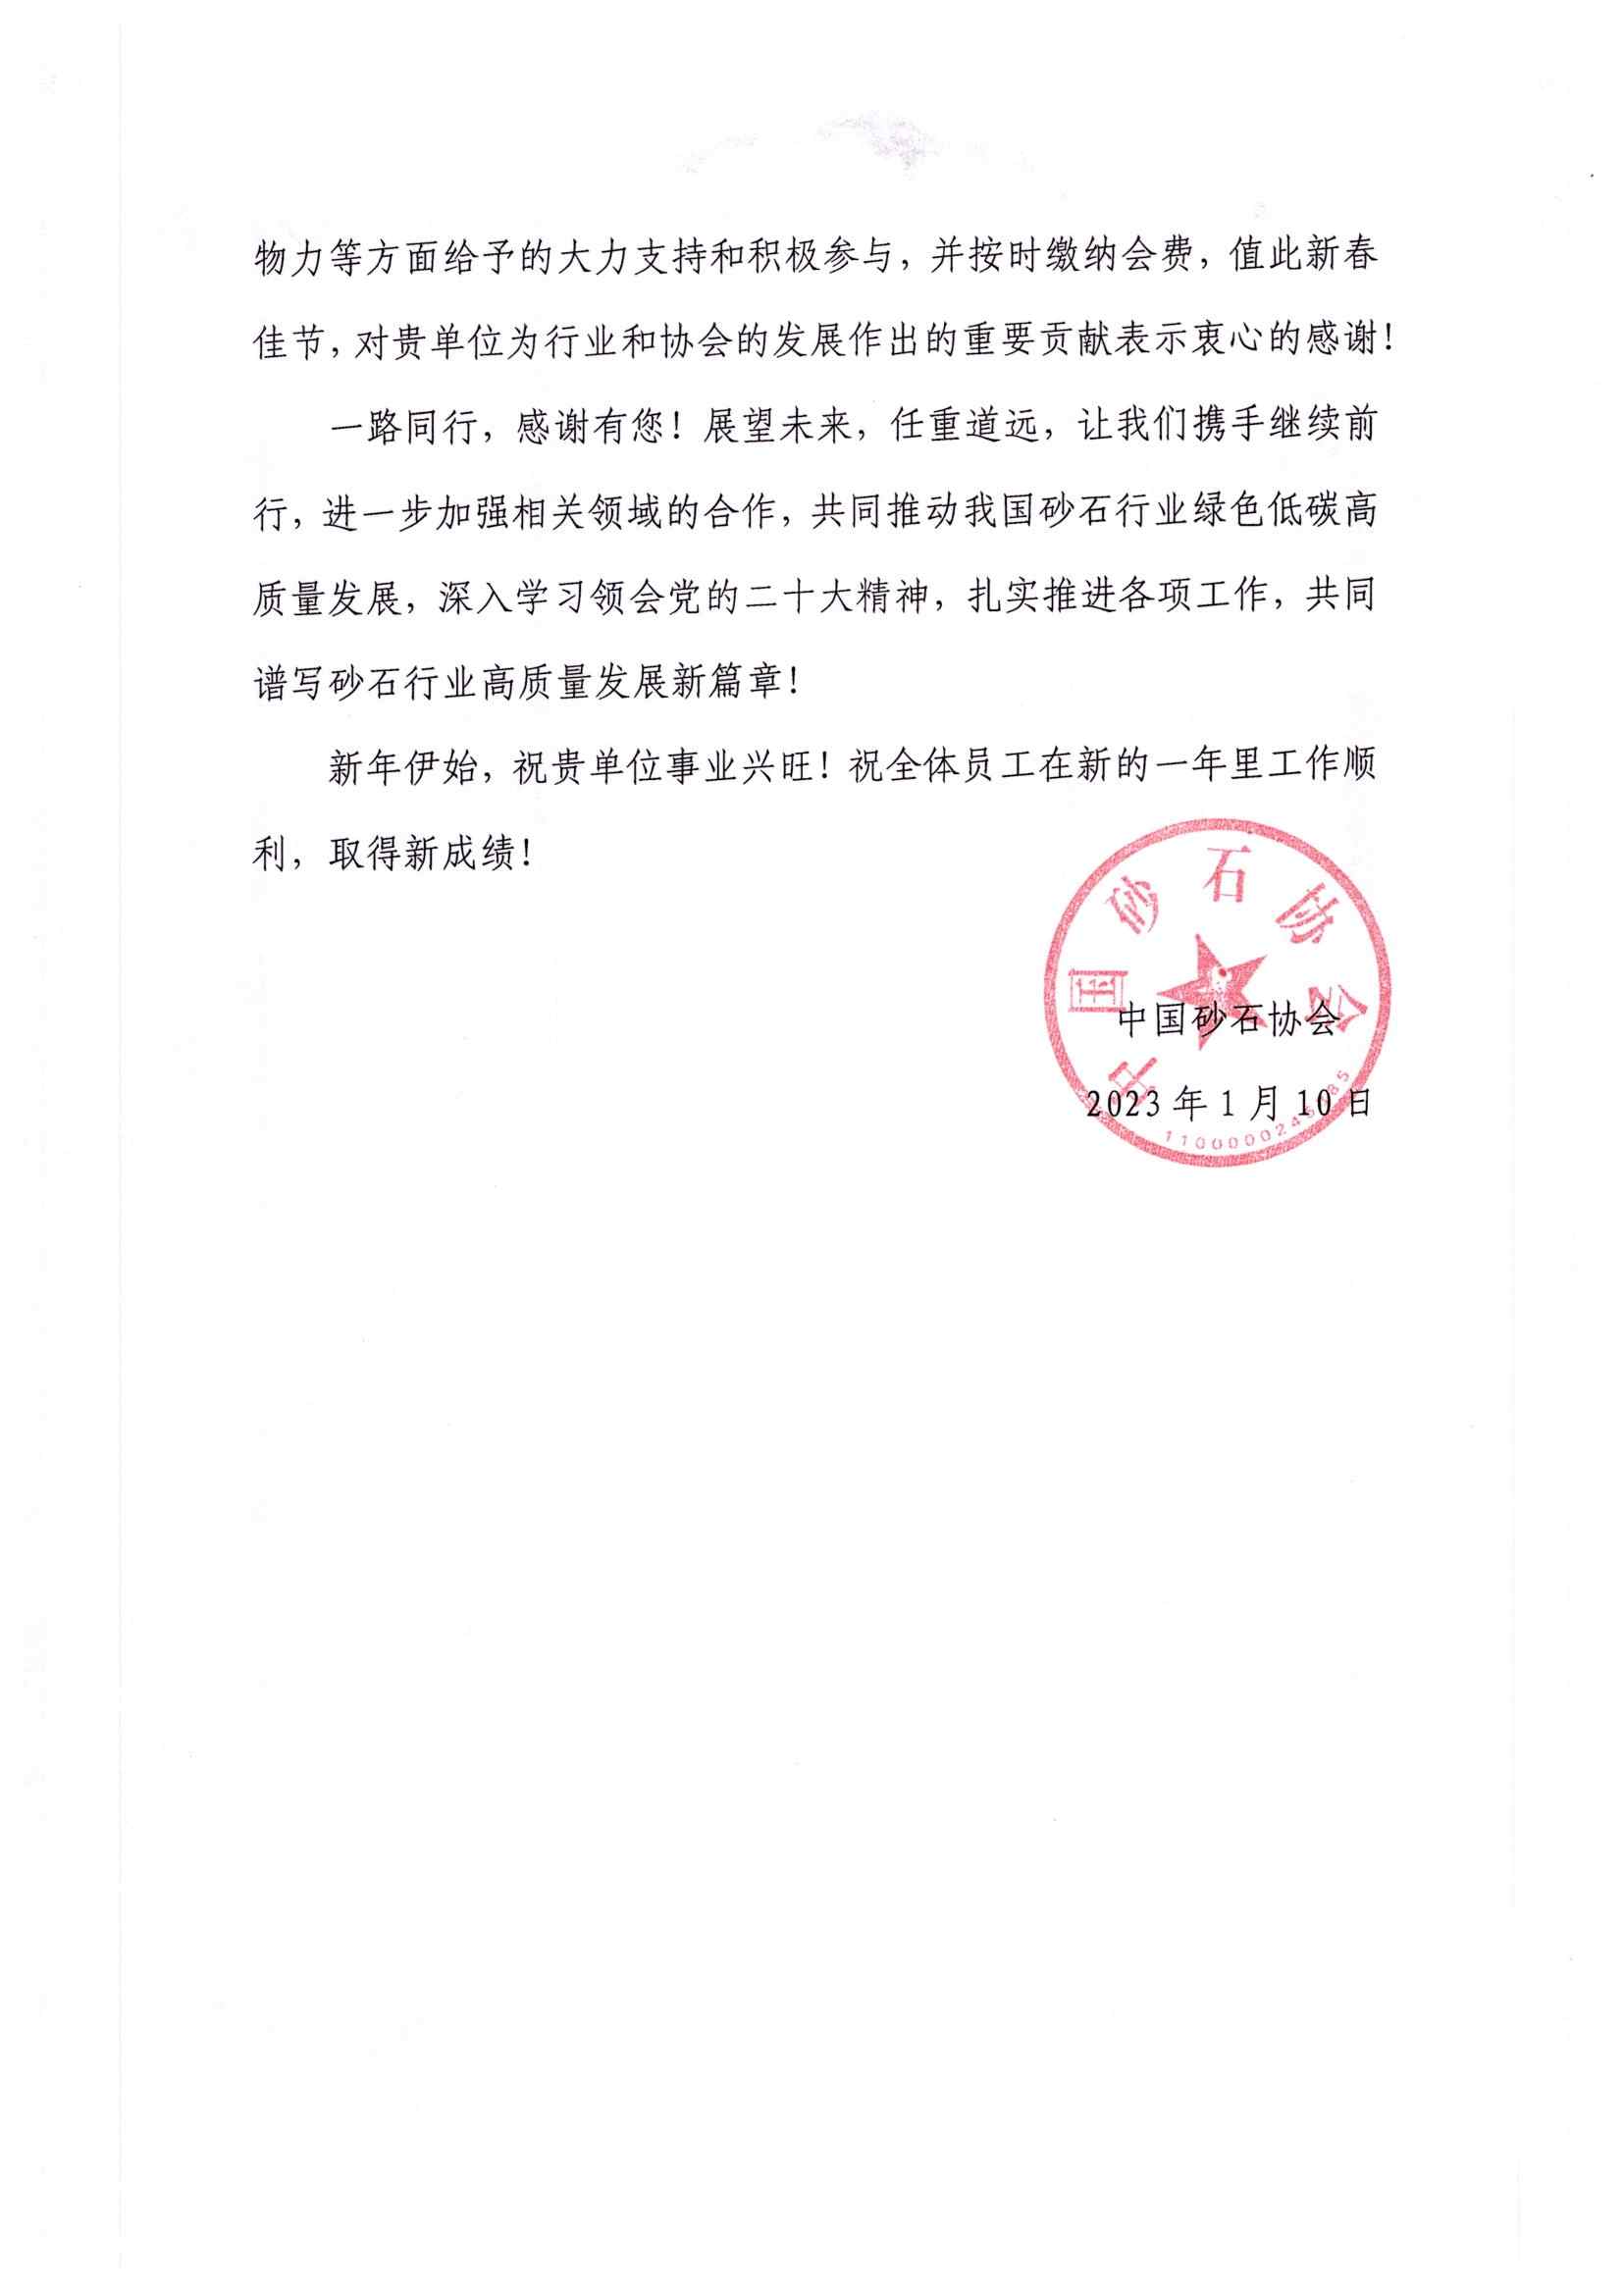 感谢信|中国砂石协会向郑州中意矿山有限公司发来感谢信